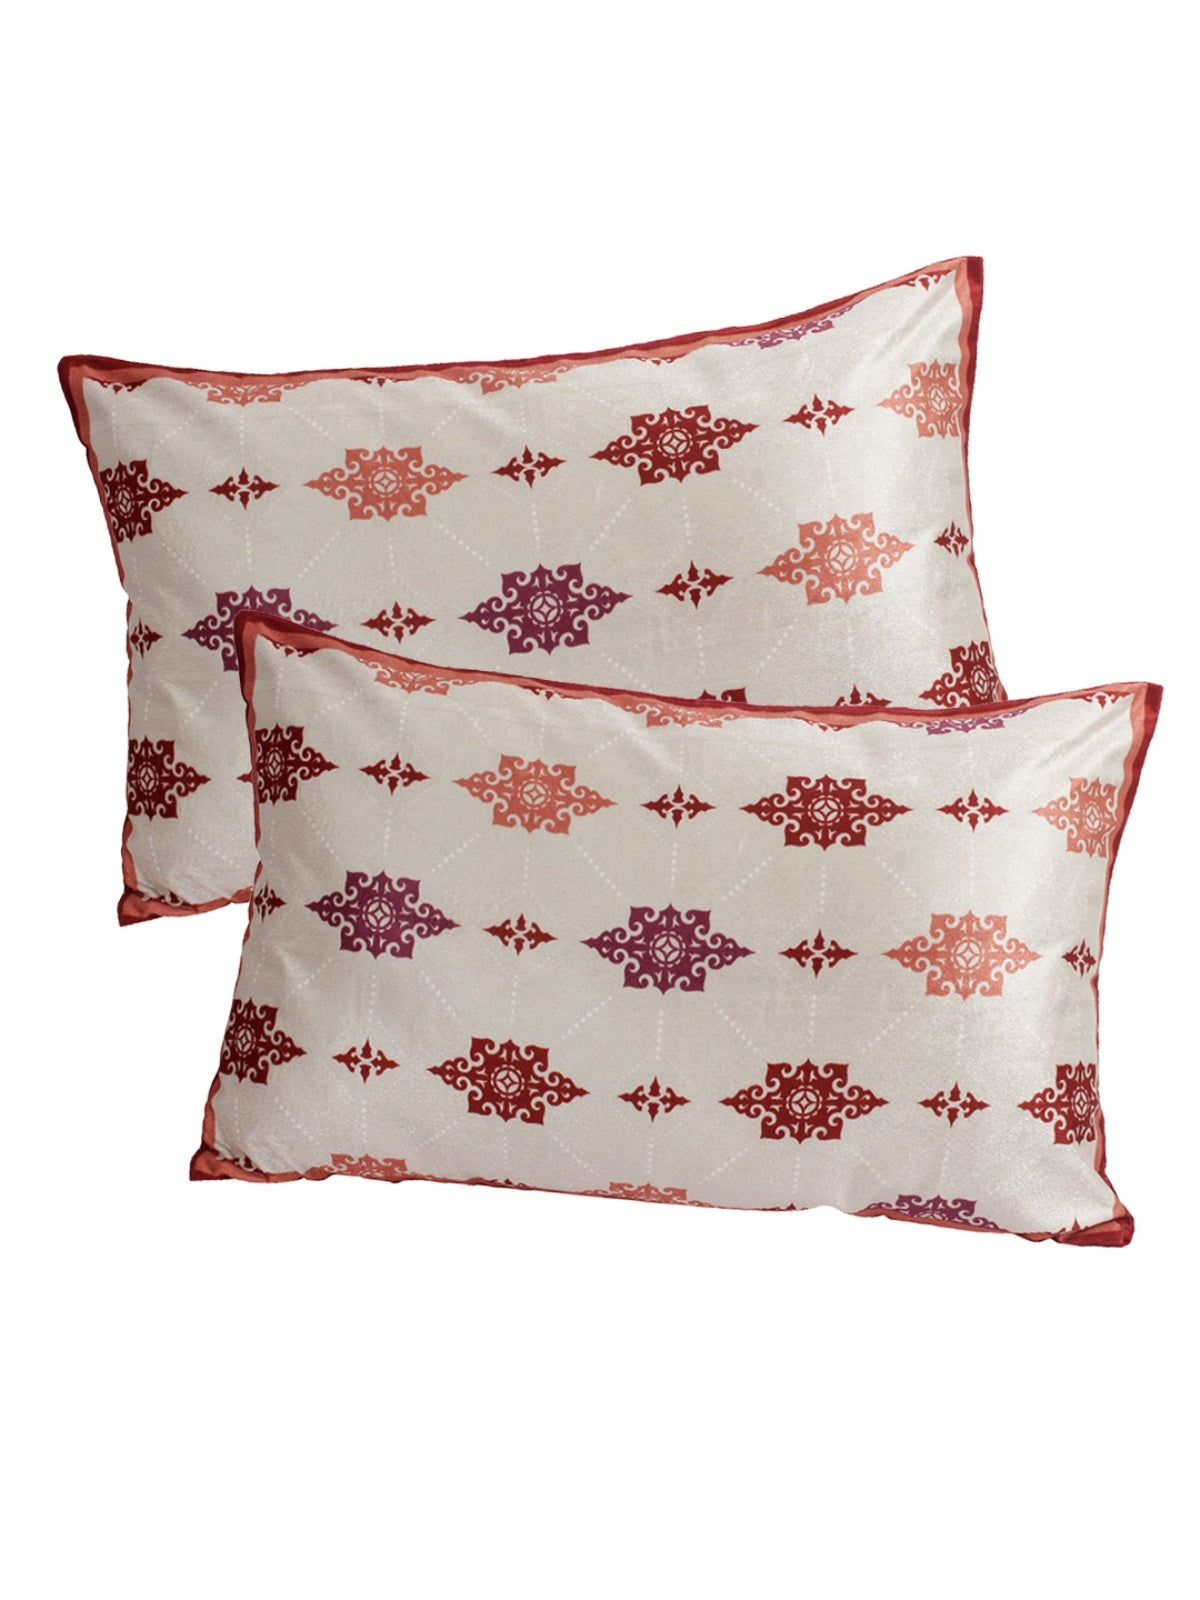 Cream & Maroon Polyester Velvet Pillow Covers - Pack of 2